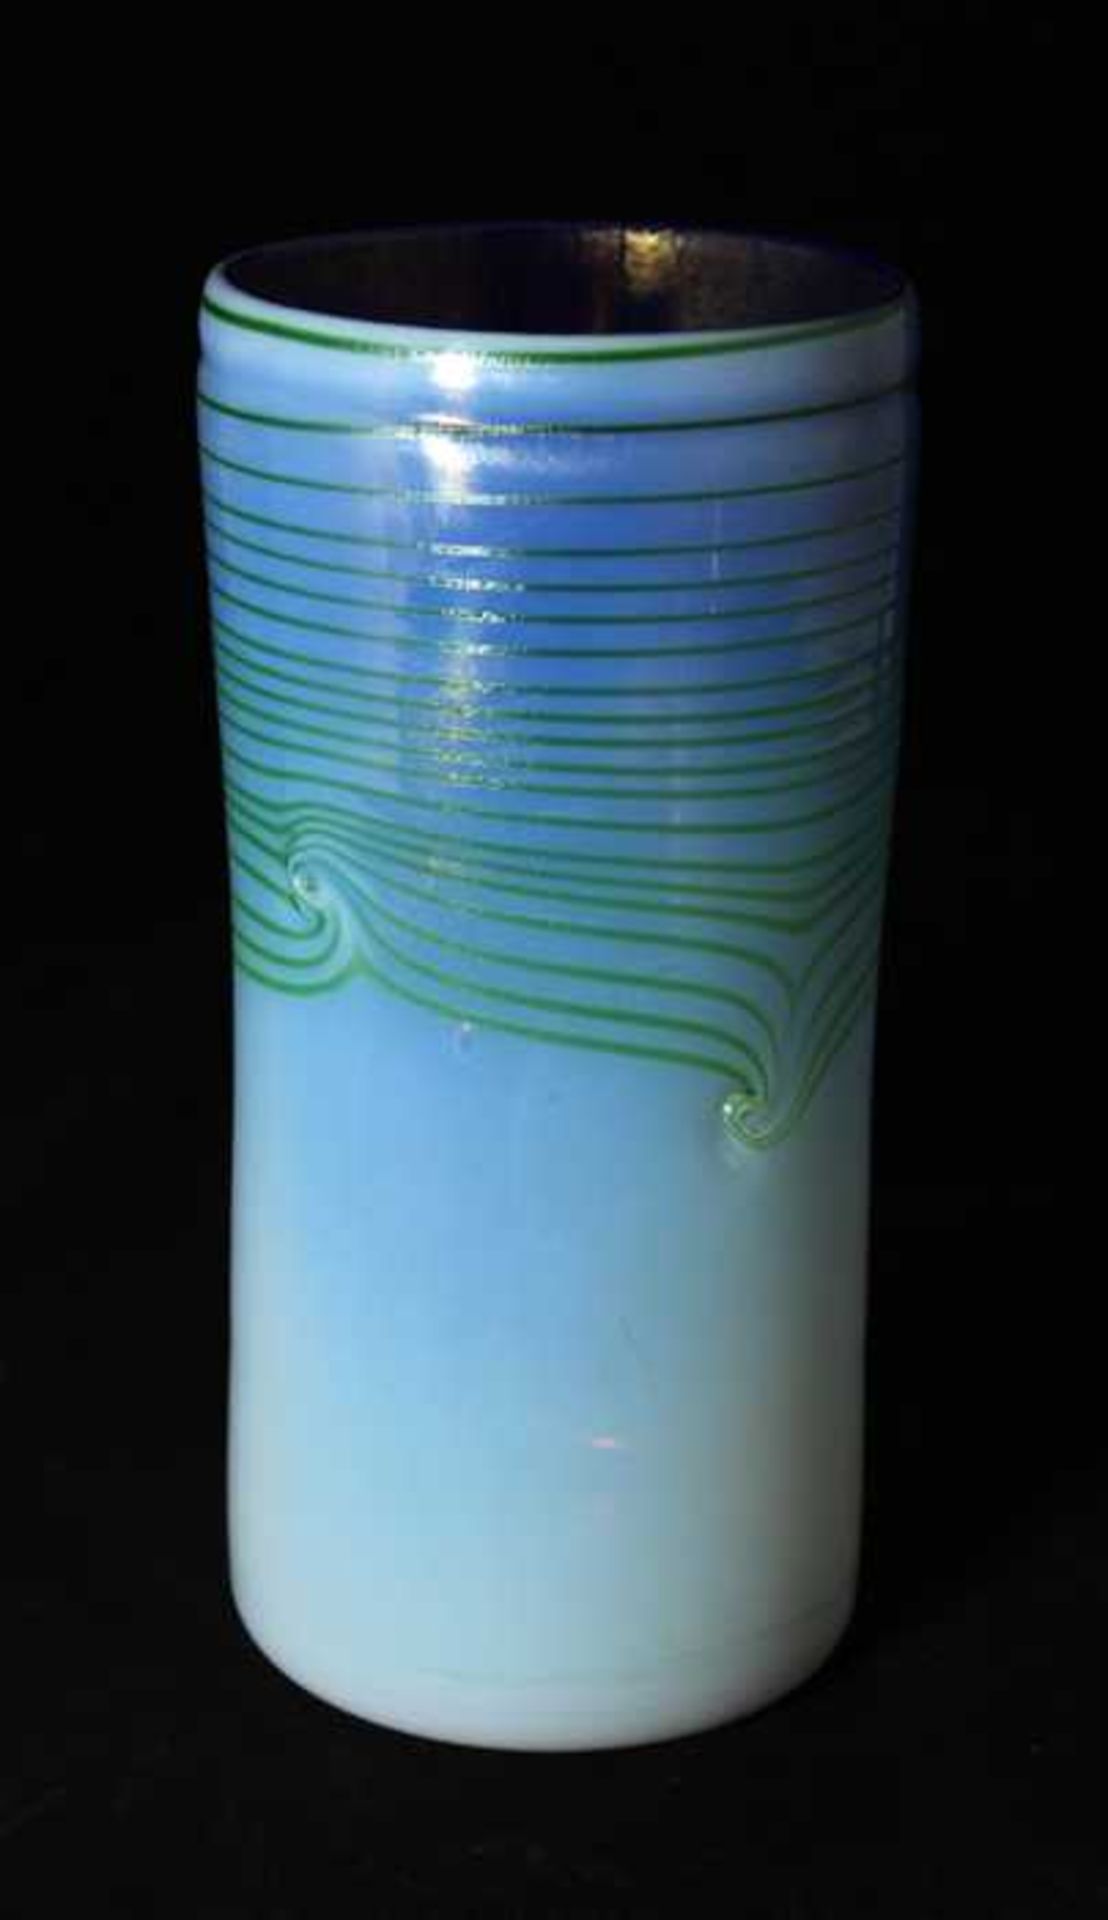 Vasenobjekt - Marke Eisch im Boden signiert und datiert 78, farbloses Glas weiß überfangen mit